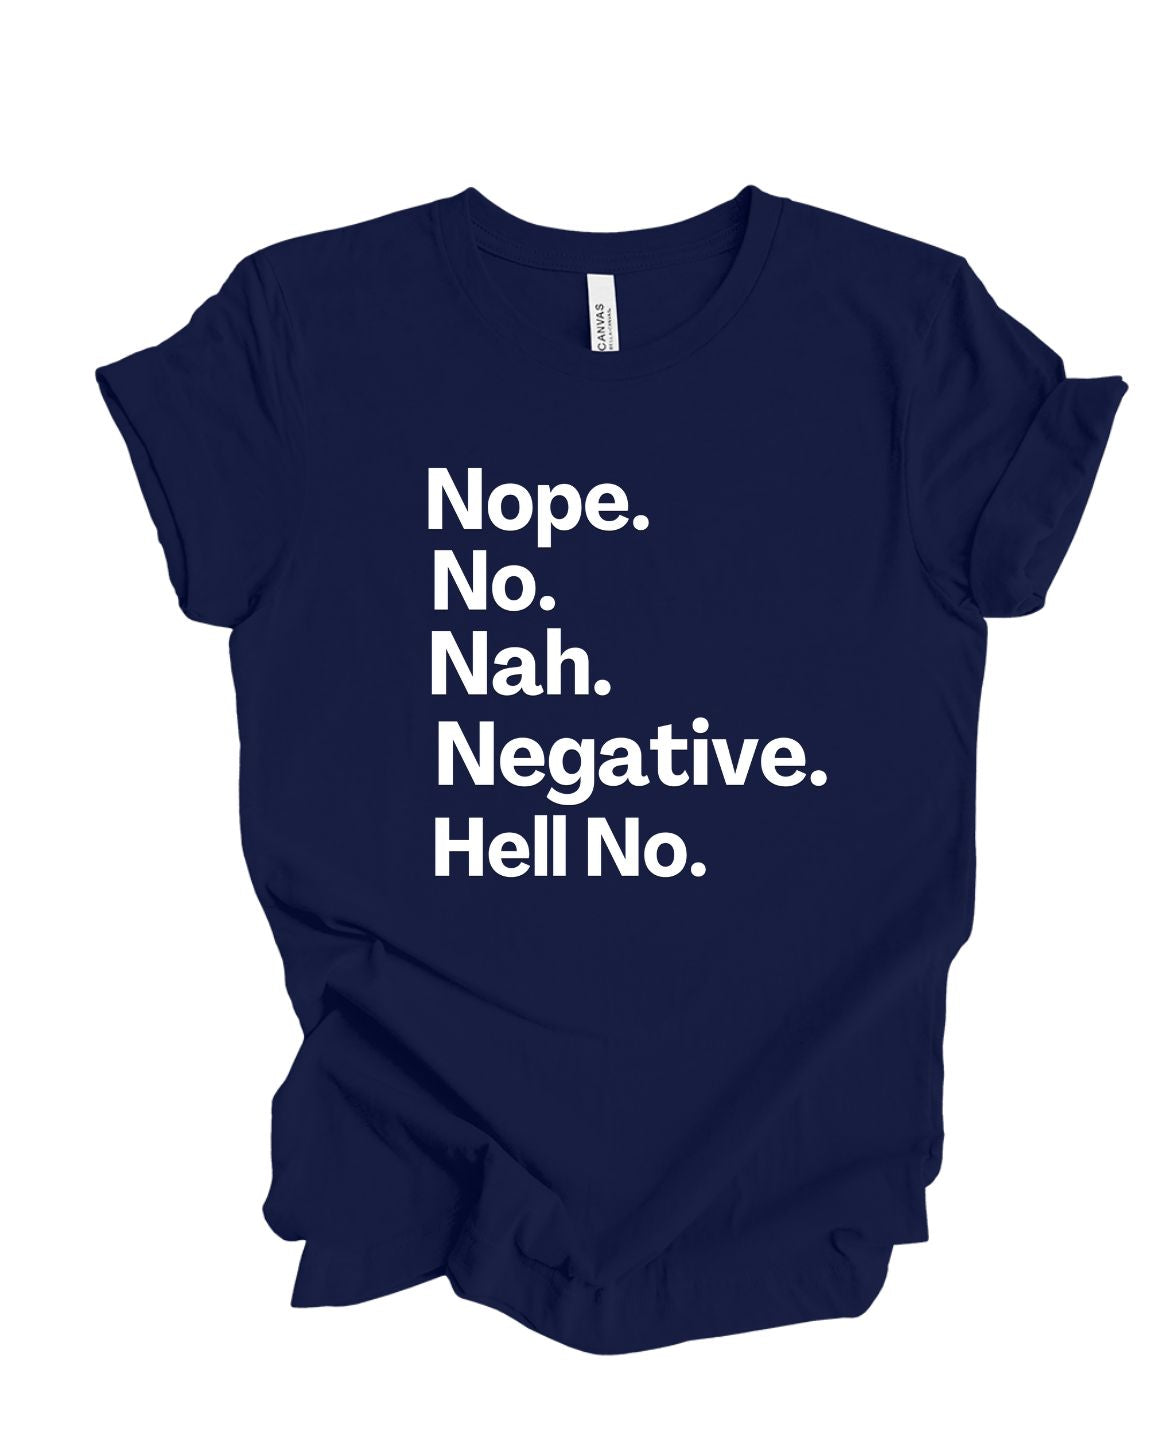 Nope, No, Nah, Negative, Hell No T-Shirt